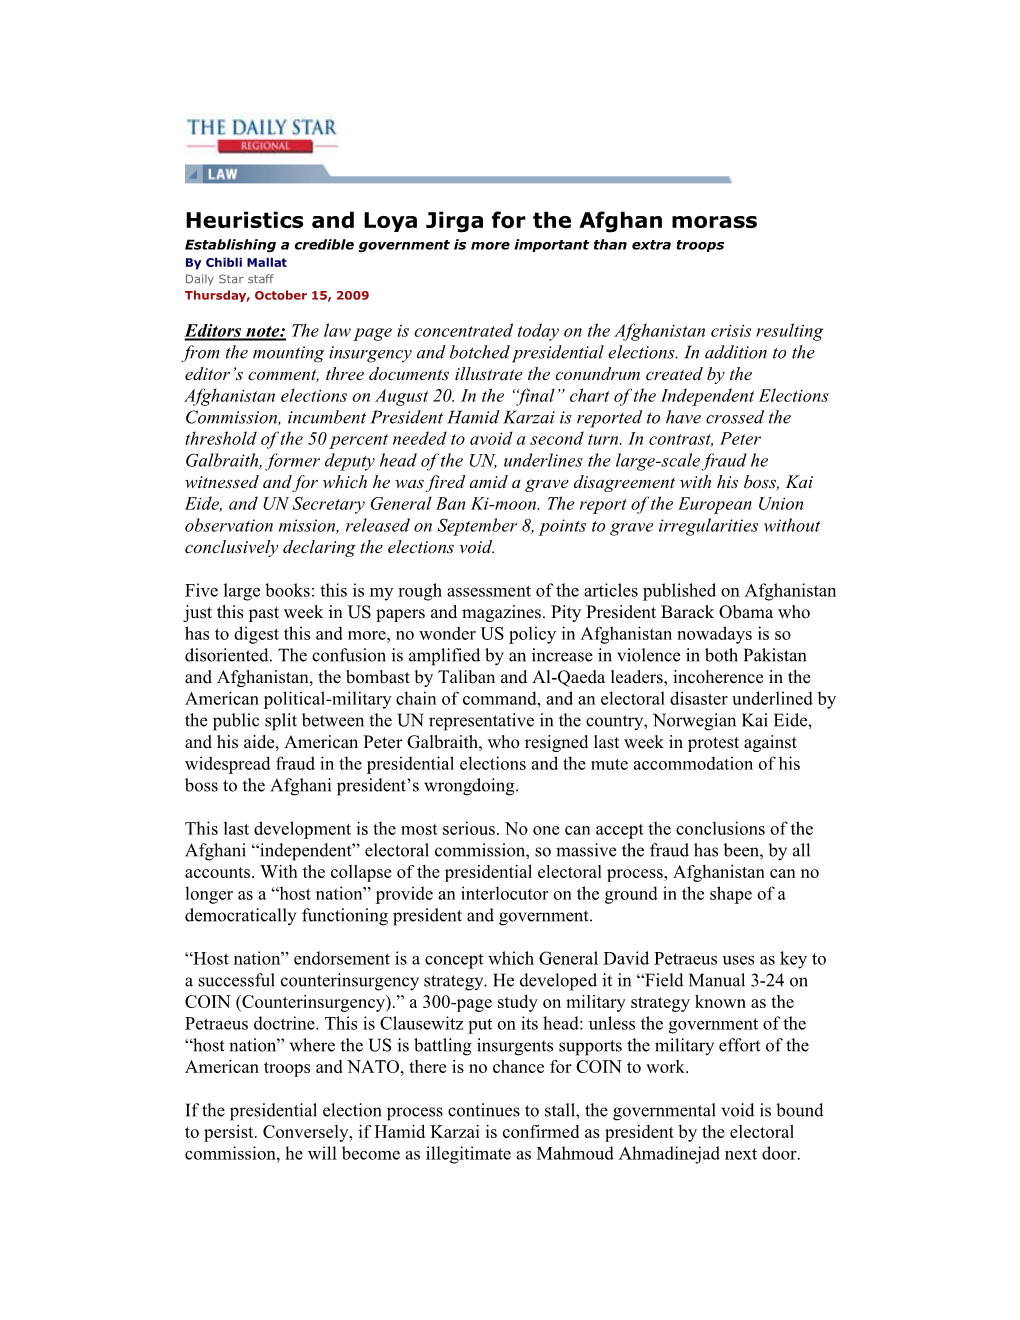 Heuristics and Loya Jirga for the Afghan Morass